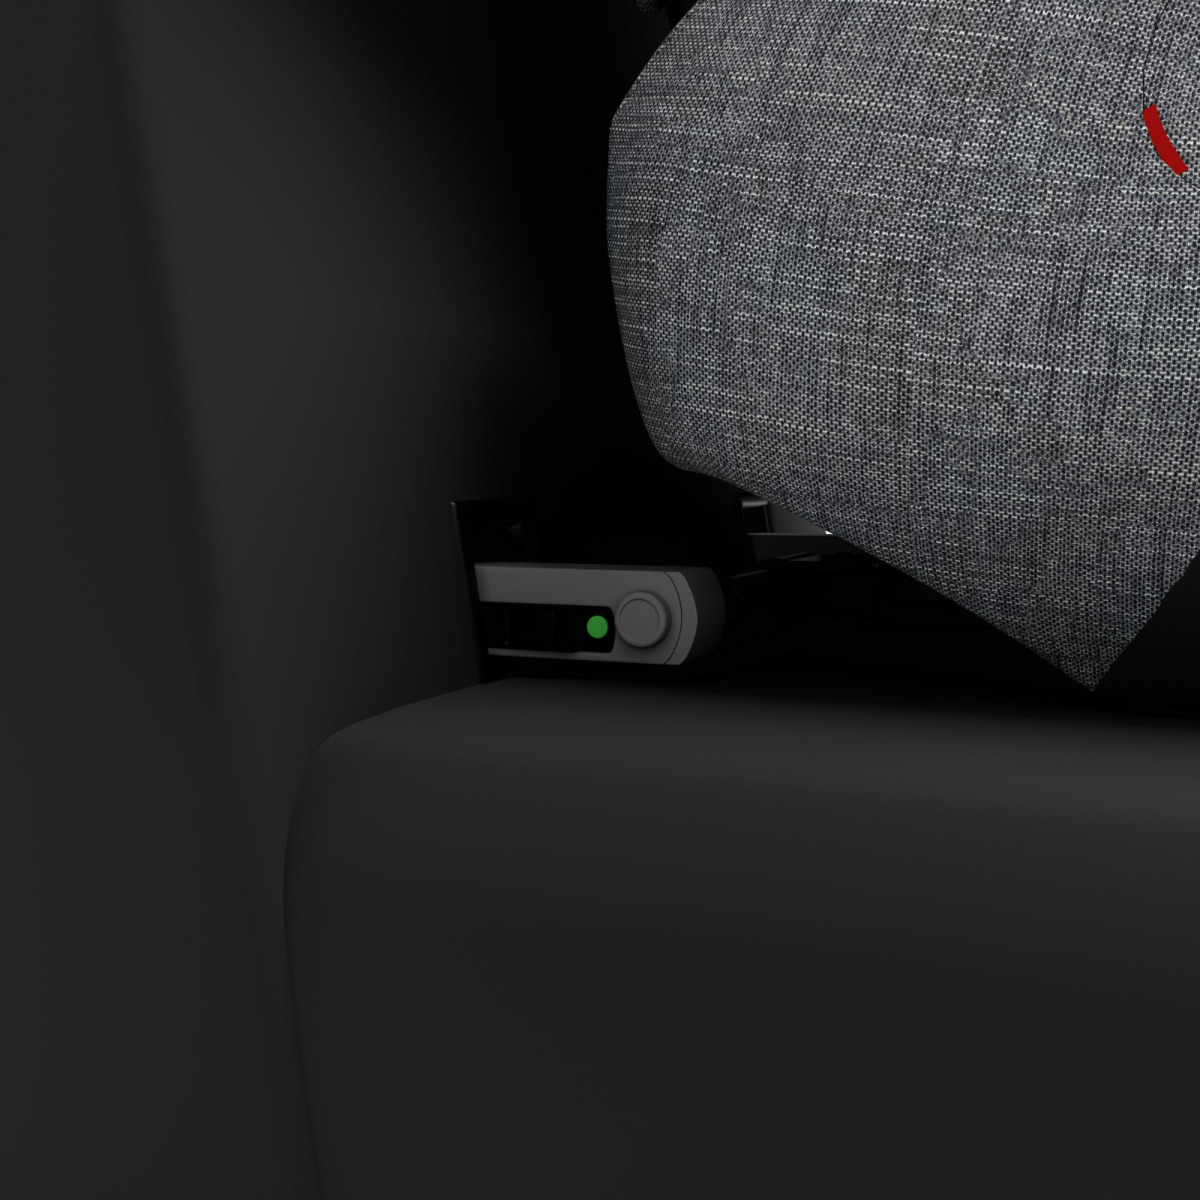 Car Seat Guardianfix 3